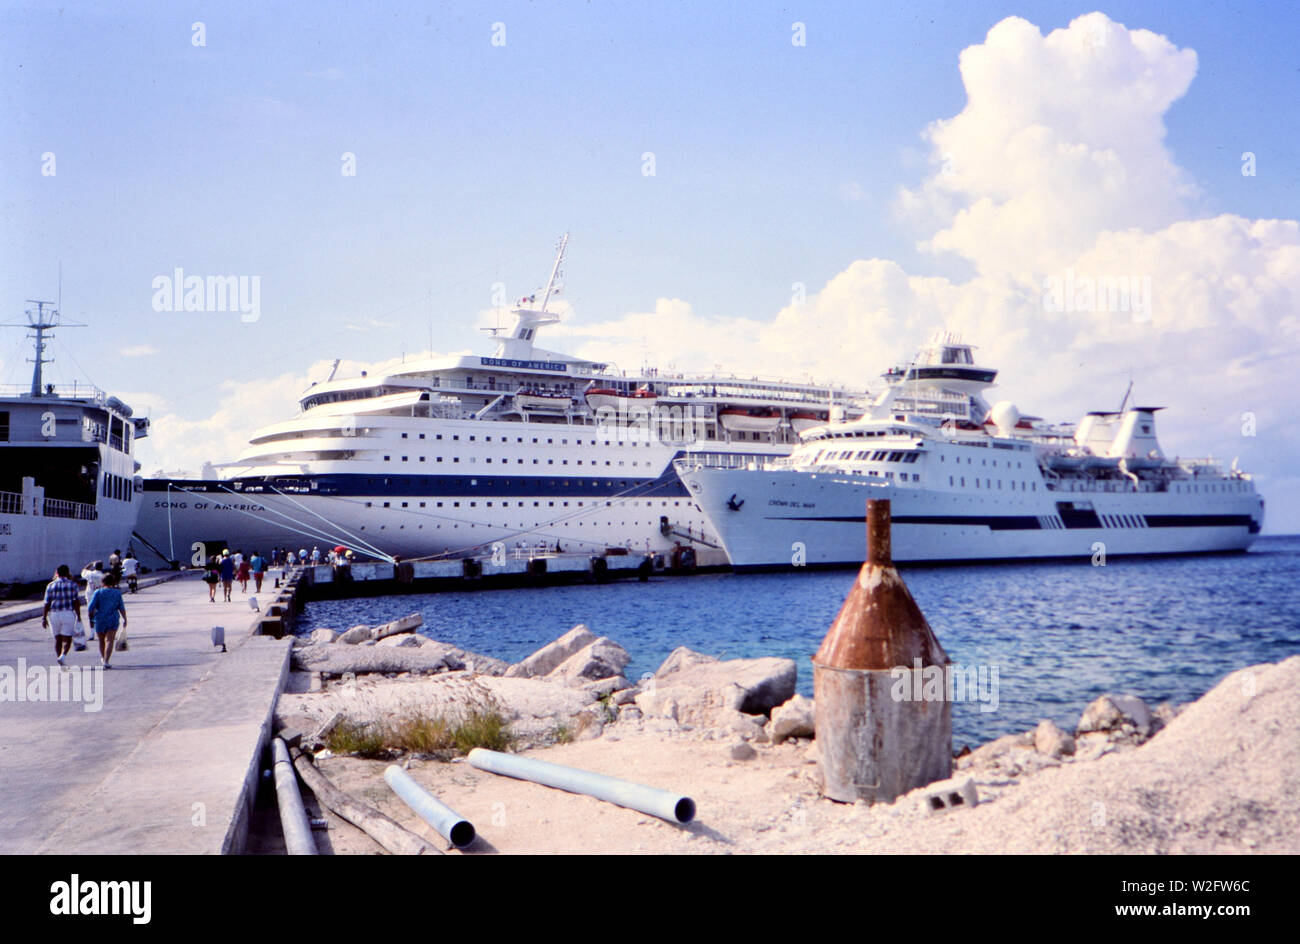 Les bateaux de croisière amarrés dans un port (chanson d'Amérique et les Del Mar) - navire à gauche a mot Cozumel sur elle ca. milieu des années 80 Banque D'Images